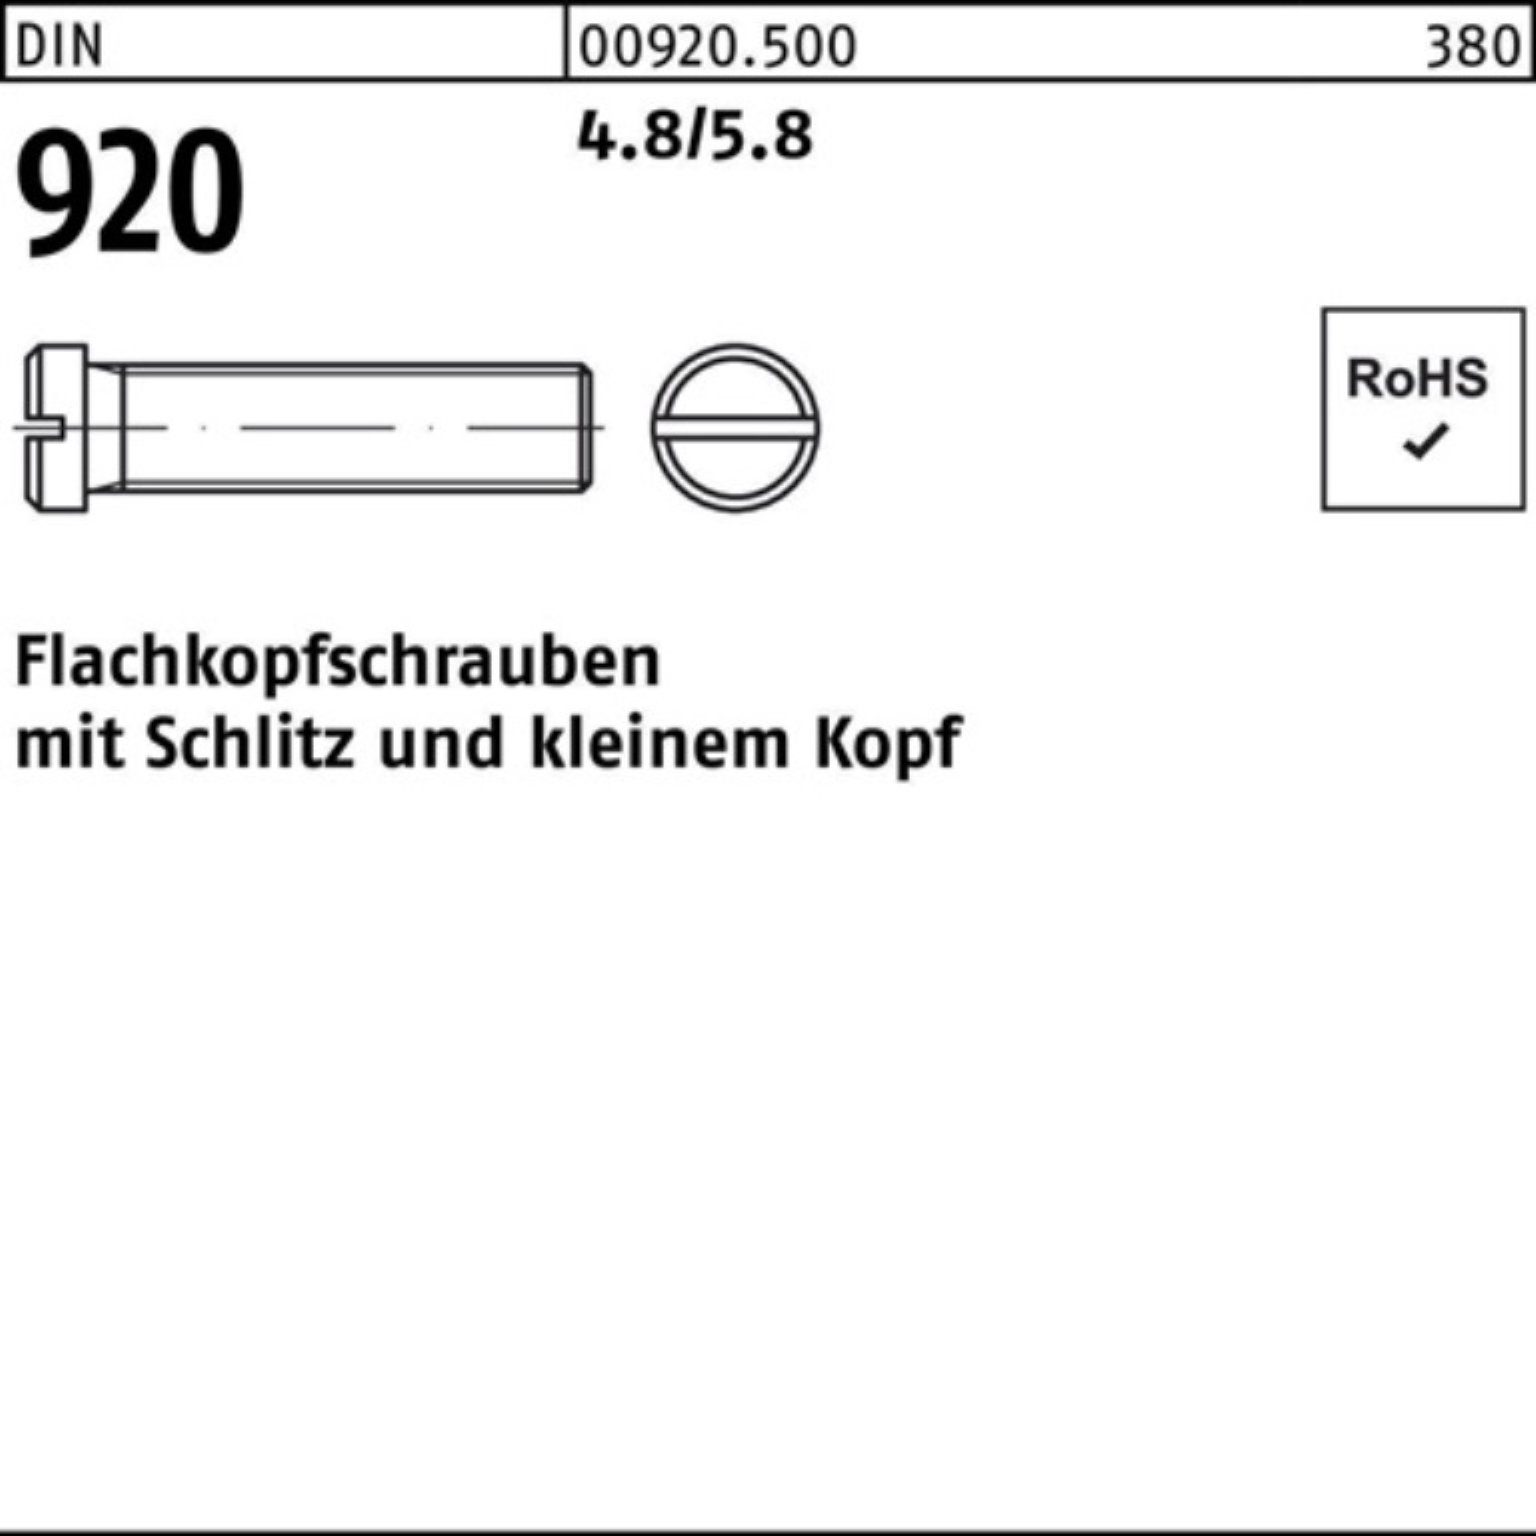 Reyher Schraube 100er Pack 4.8/5.8 920 Flachkopfschraube 8 M5x DIN Stück 100 Schlitz